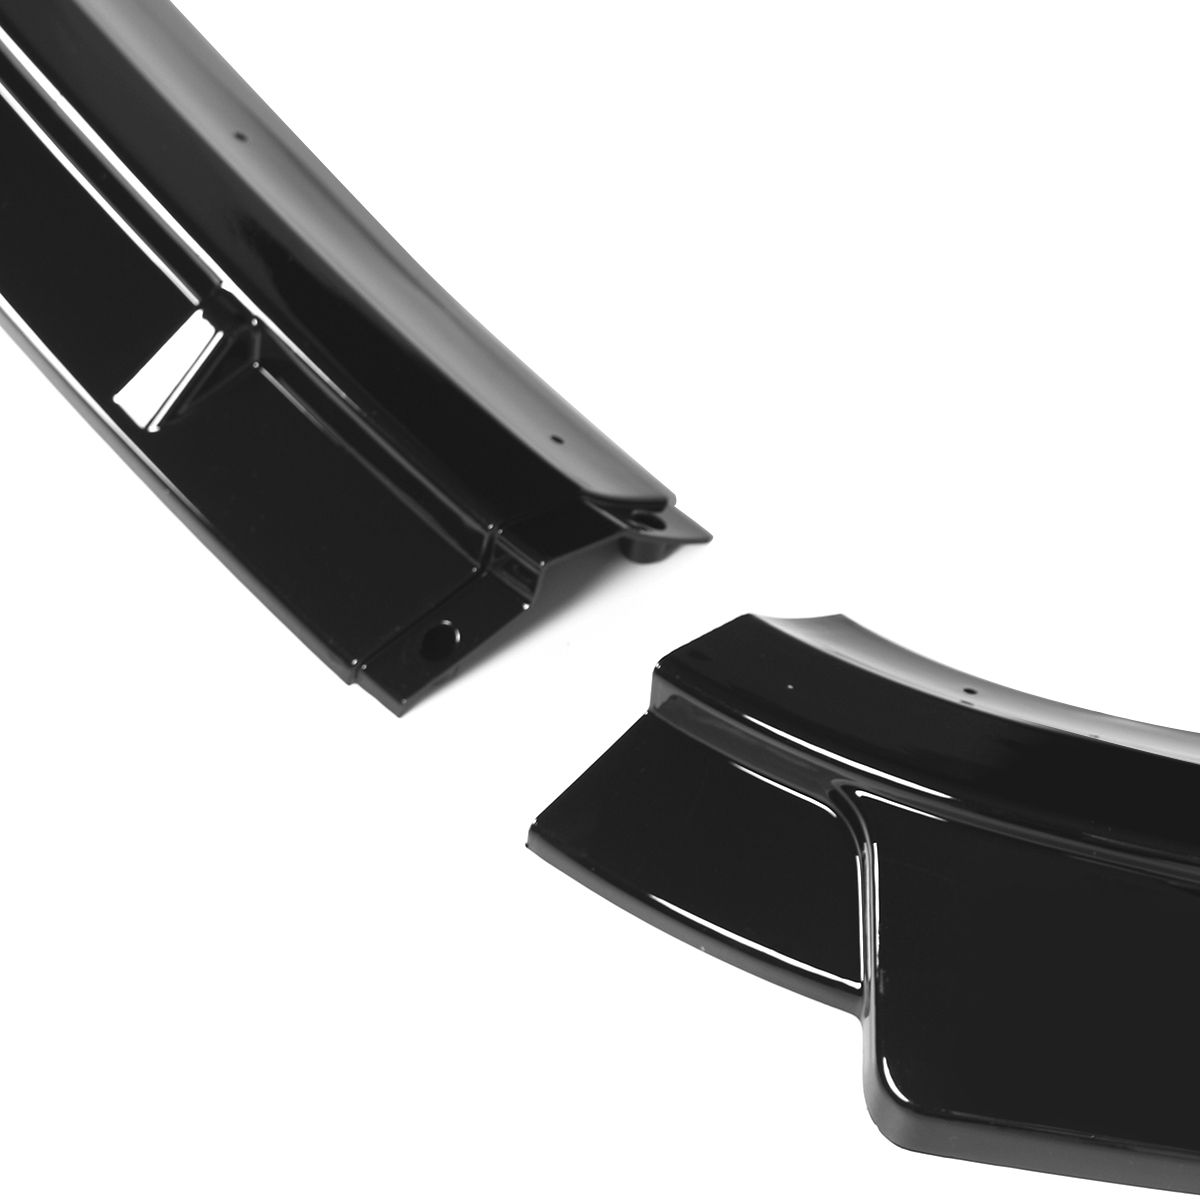 Gloss-Black-Front-Bumper-Lip-Splitter-For-Volkswagen-Golf-75-MK75-2018-2020-3x-1703708